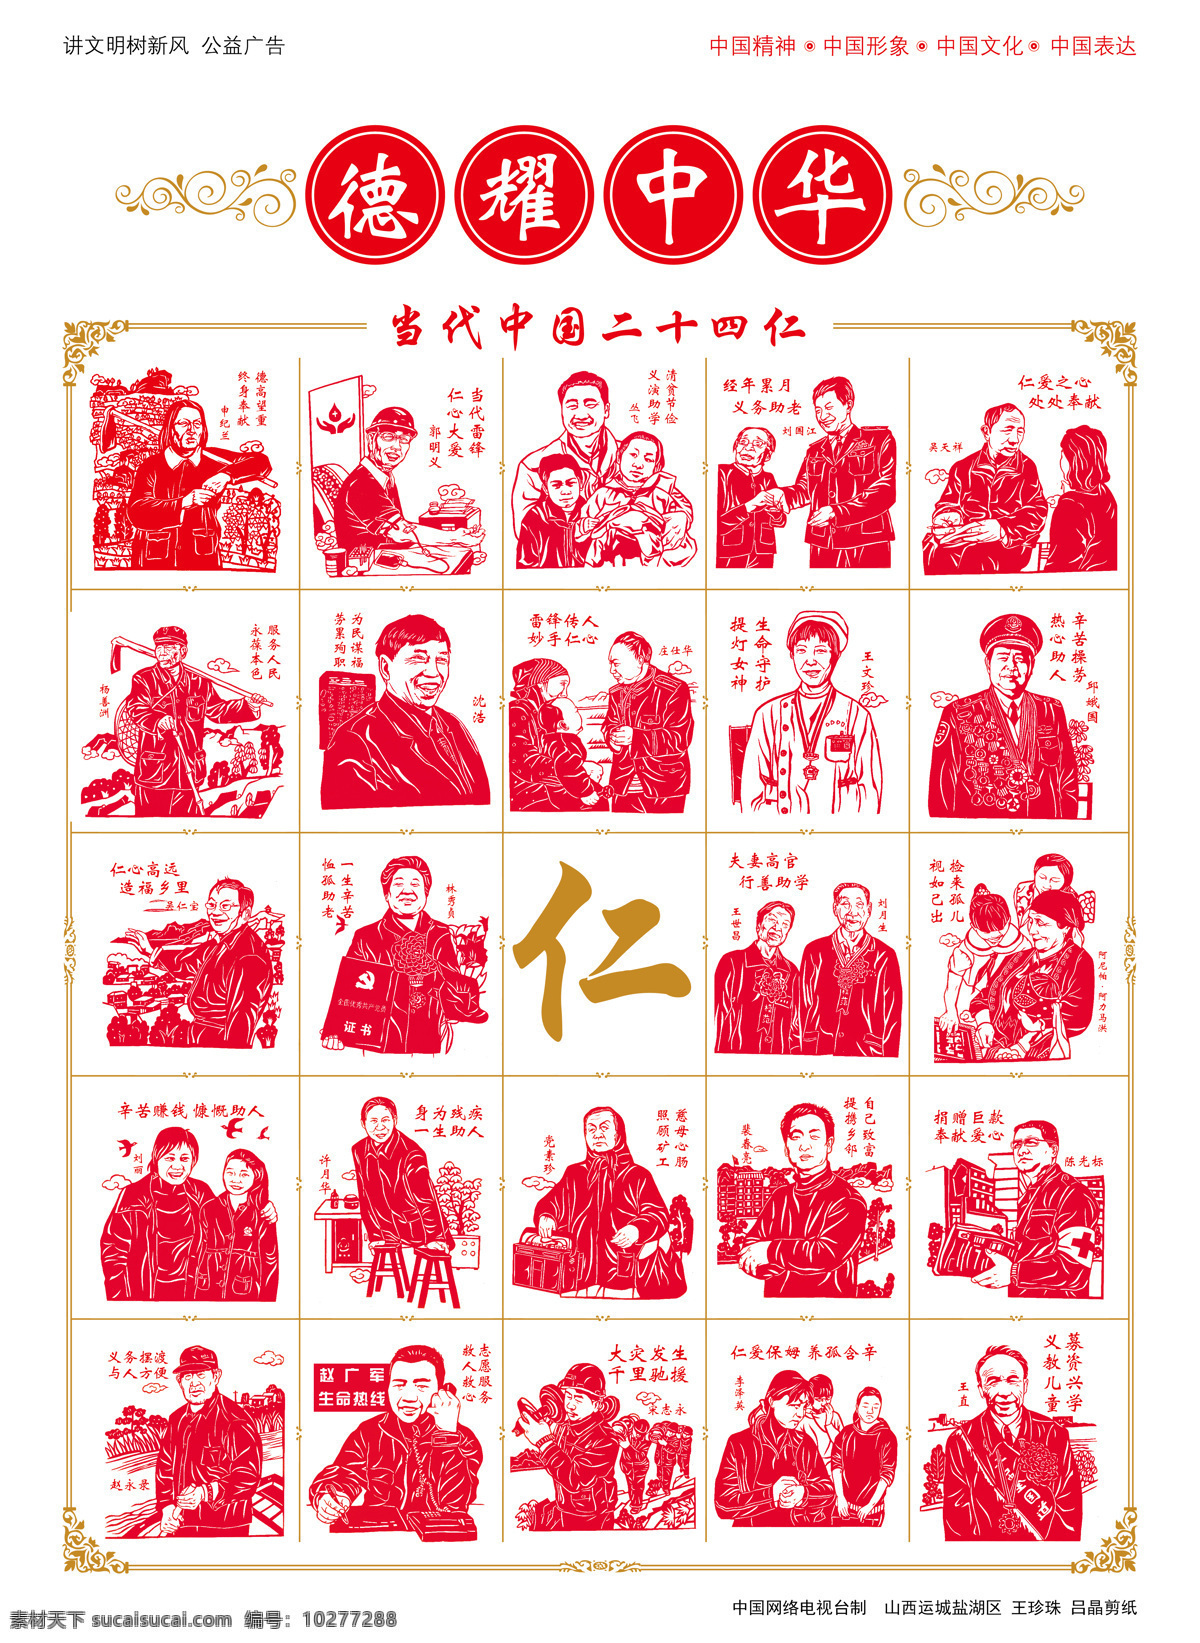 二十四仁 德耀中华 公益广告 红色 剪纸 名人 伟人 传统文化 文化艺术